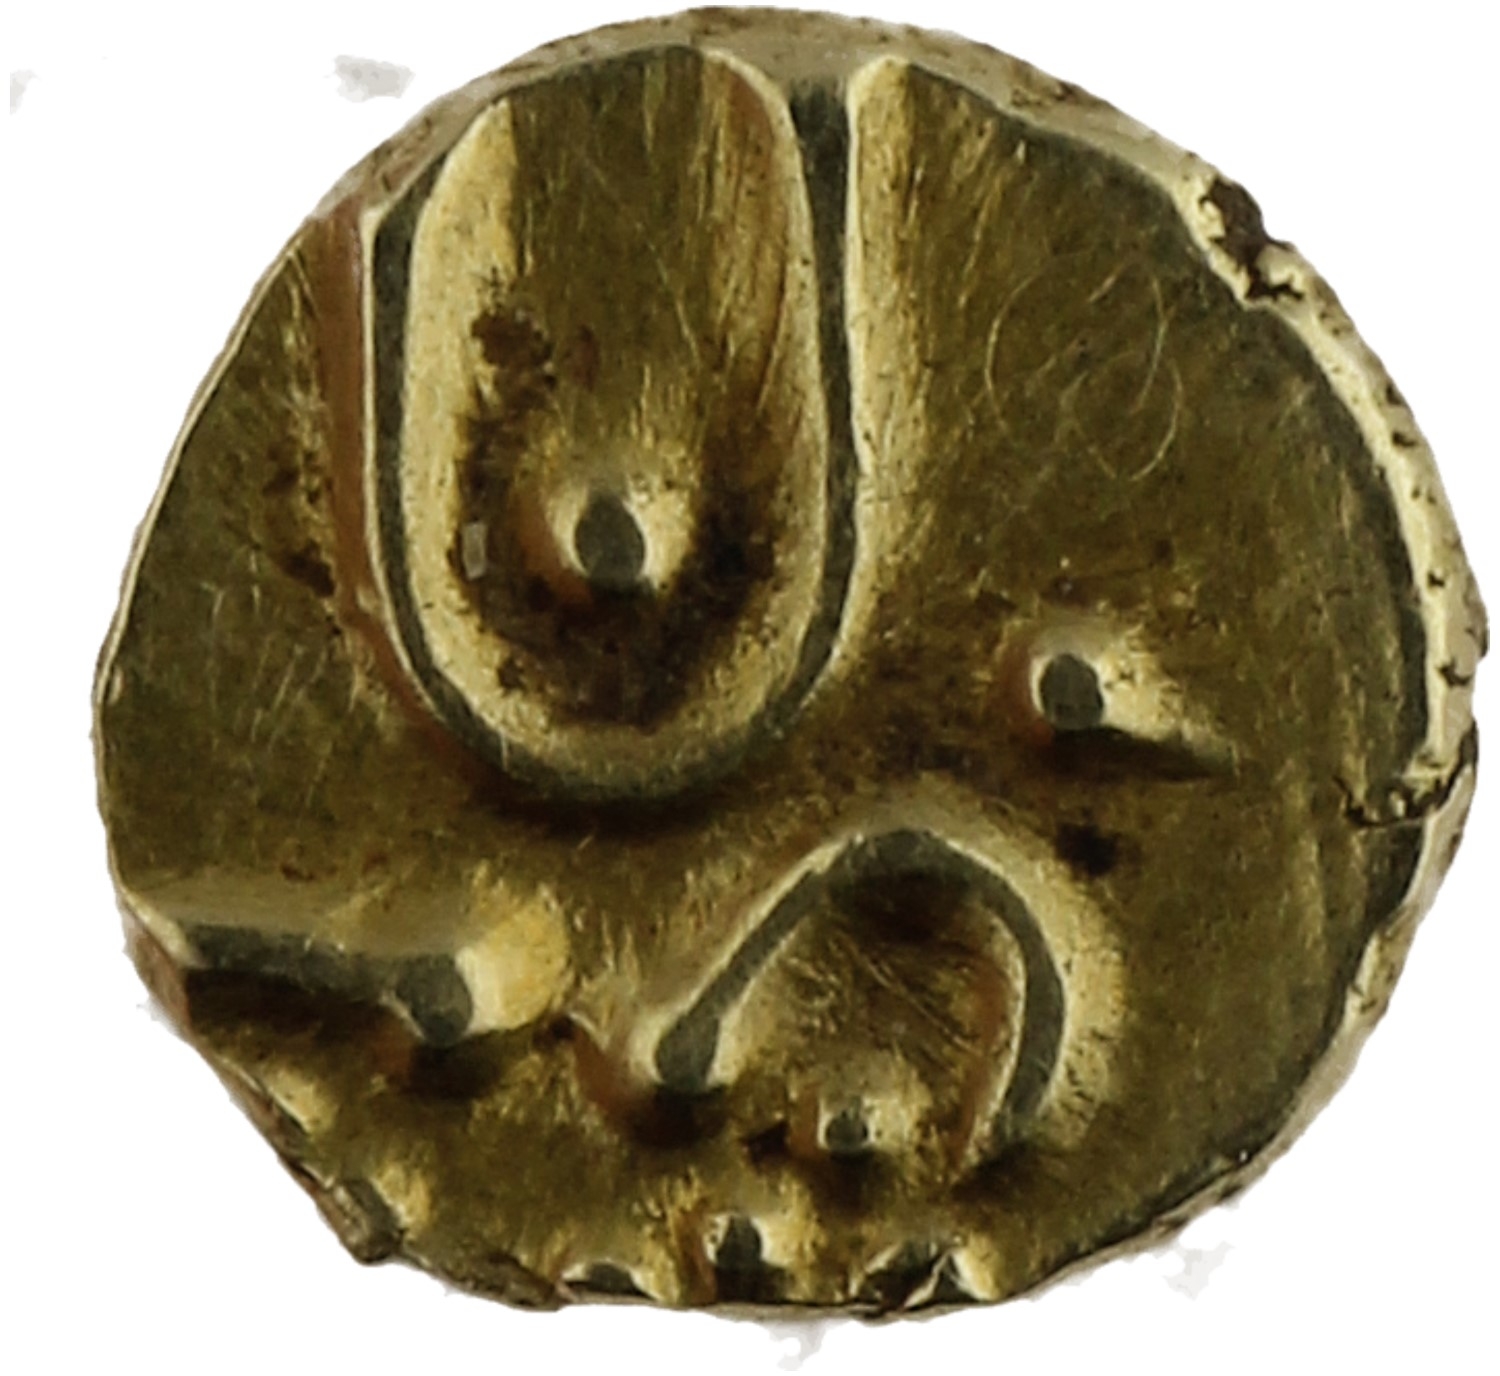 Fanam - Sri Lanka (Kotte) - c. 1300-1500